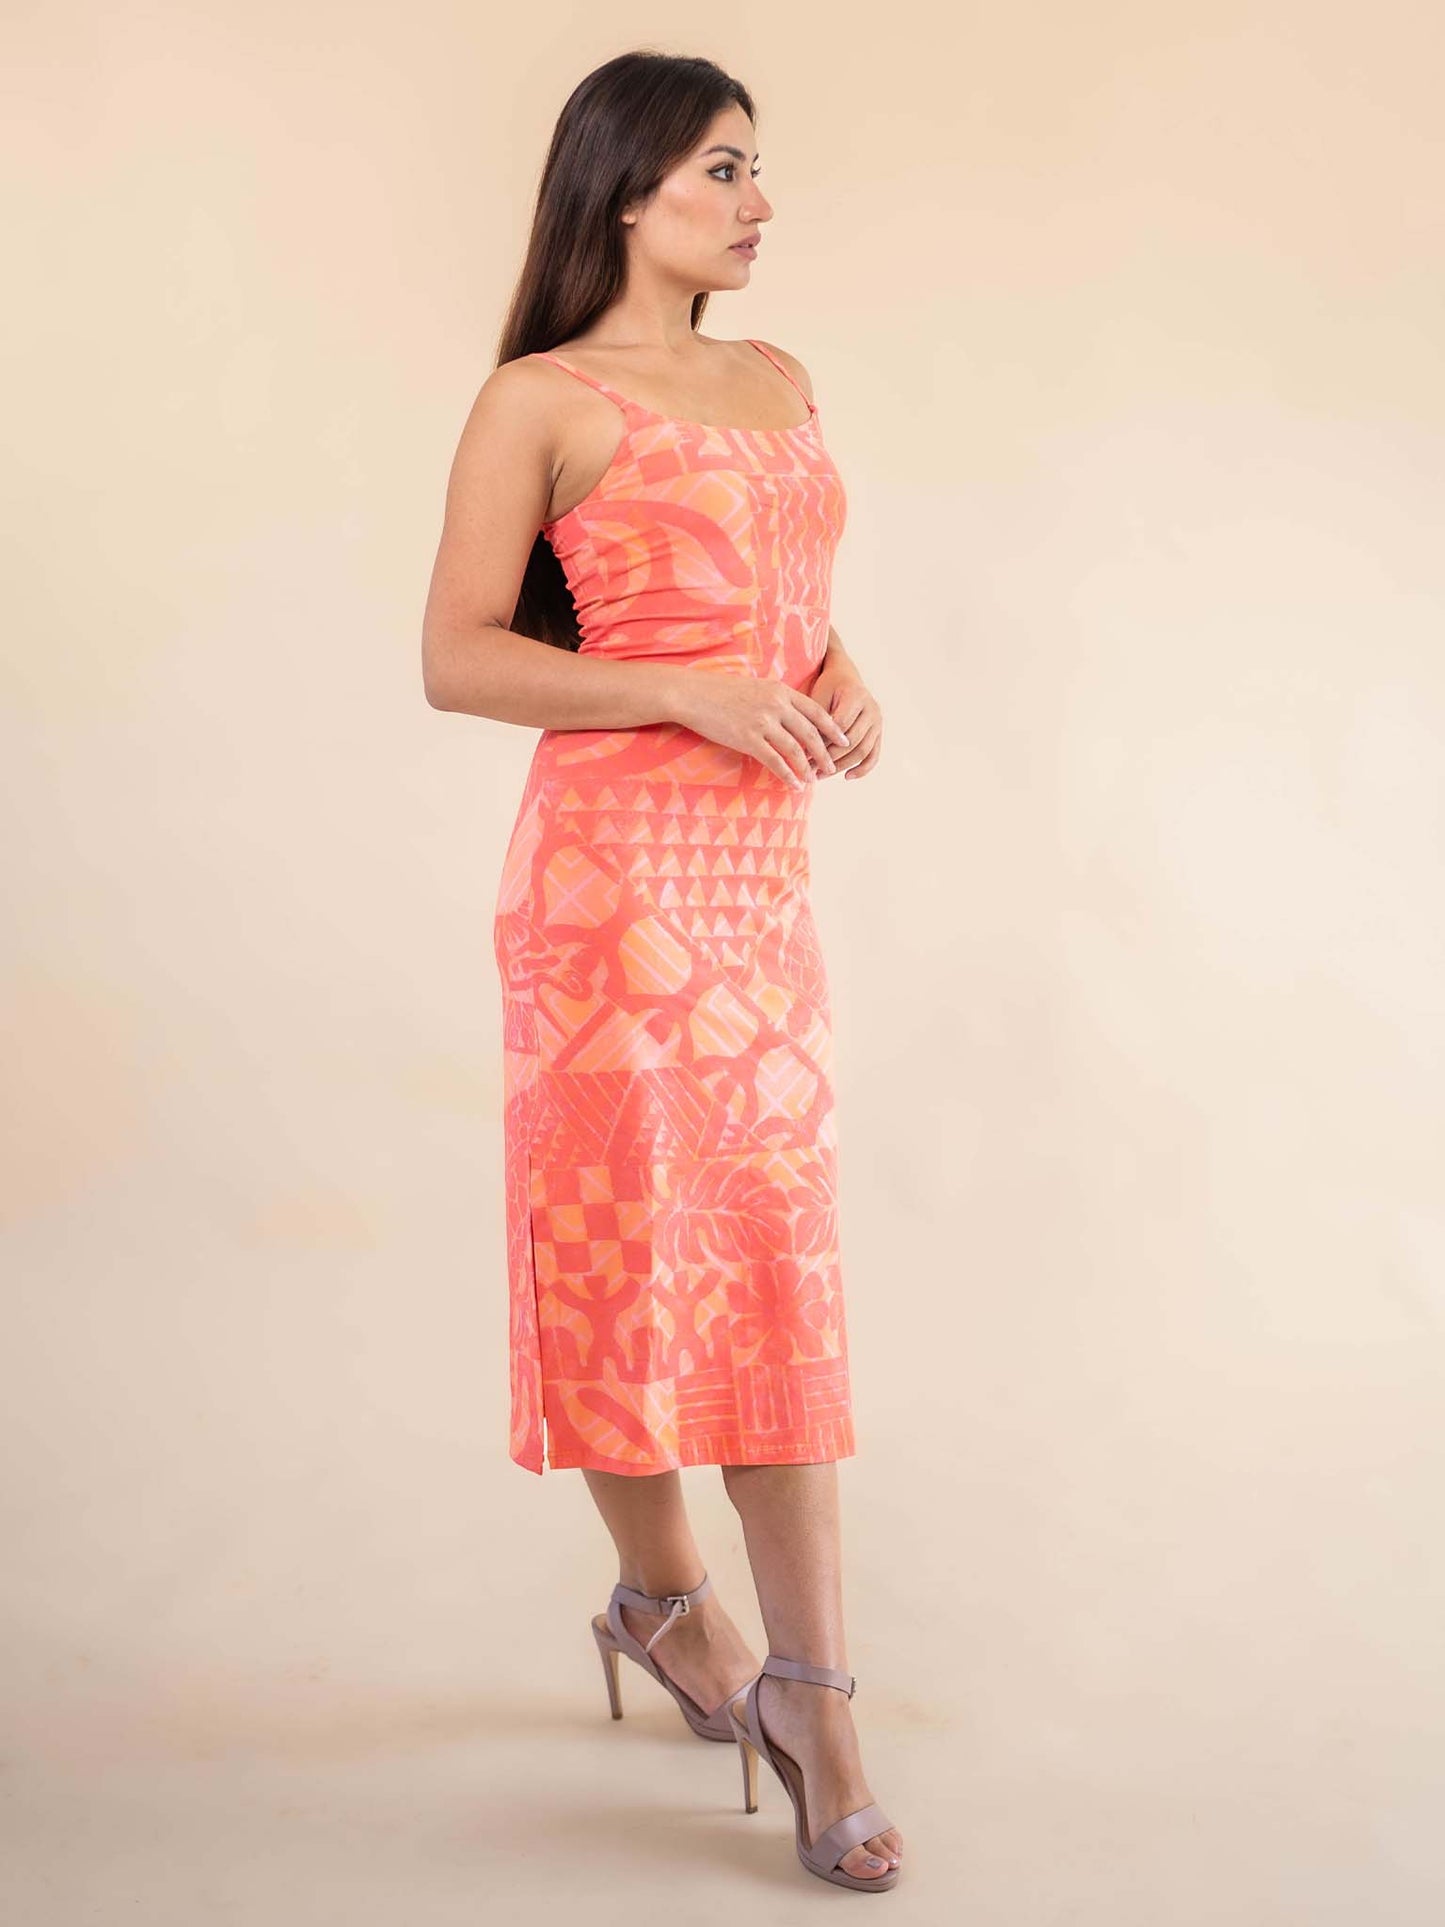 Moana Dress - Apricot